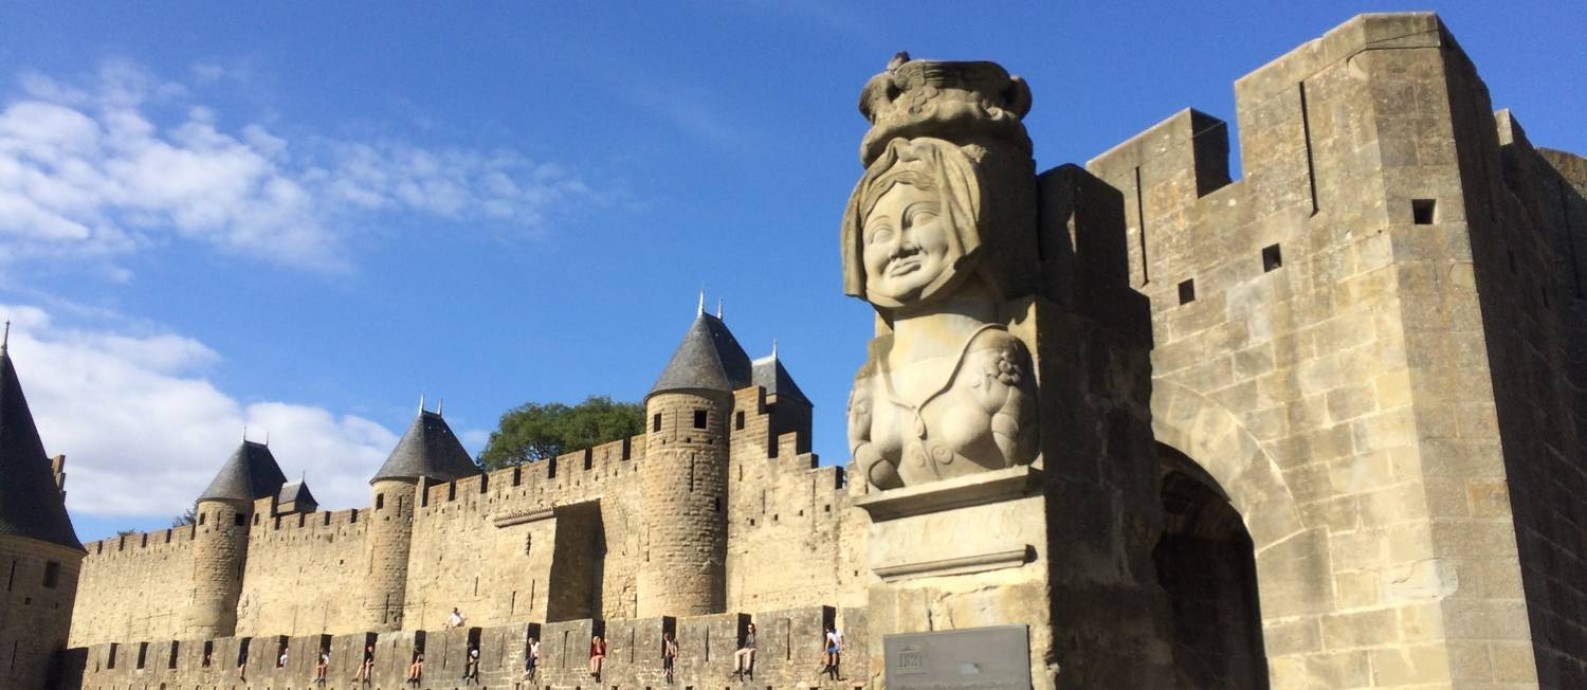 Estátua reproduz imagem de Dame Carcas, figura lendária que dá nome à cidade de Carcassonne Foto: Alina Hartounian/AP
